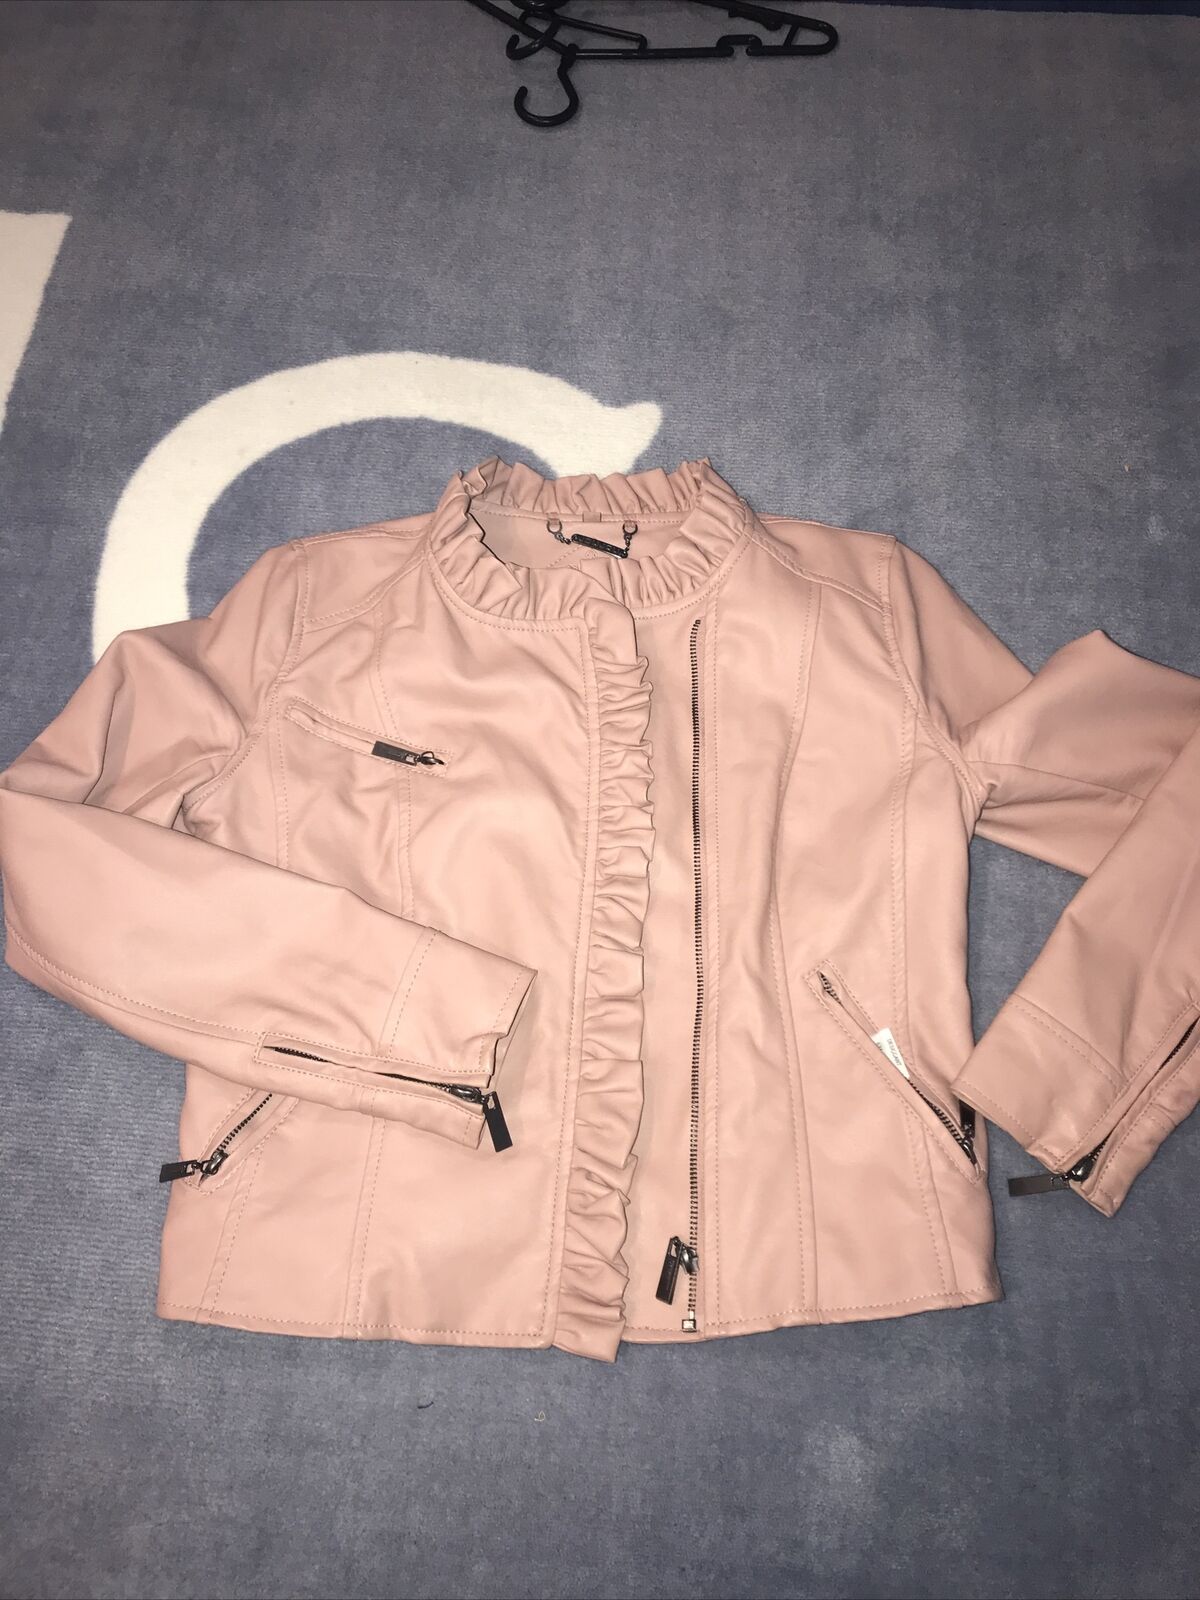 Joujou Girls Large Dusty Pink Ruffled Faux Leather Moto Jacket Nwot $59.00